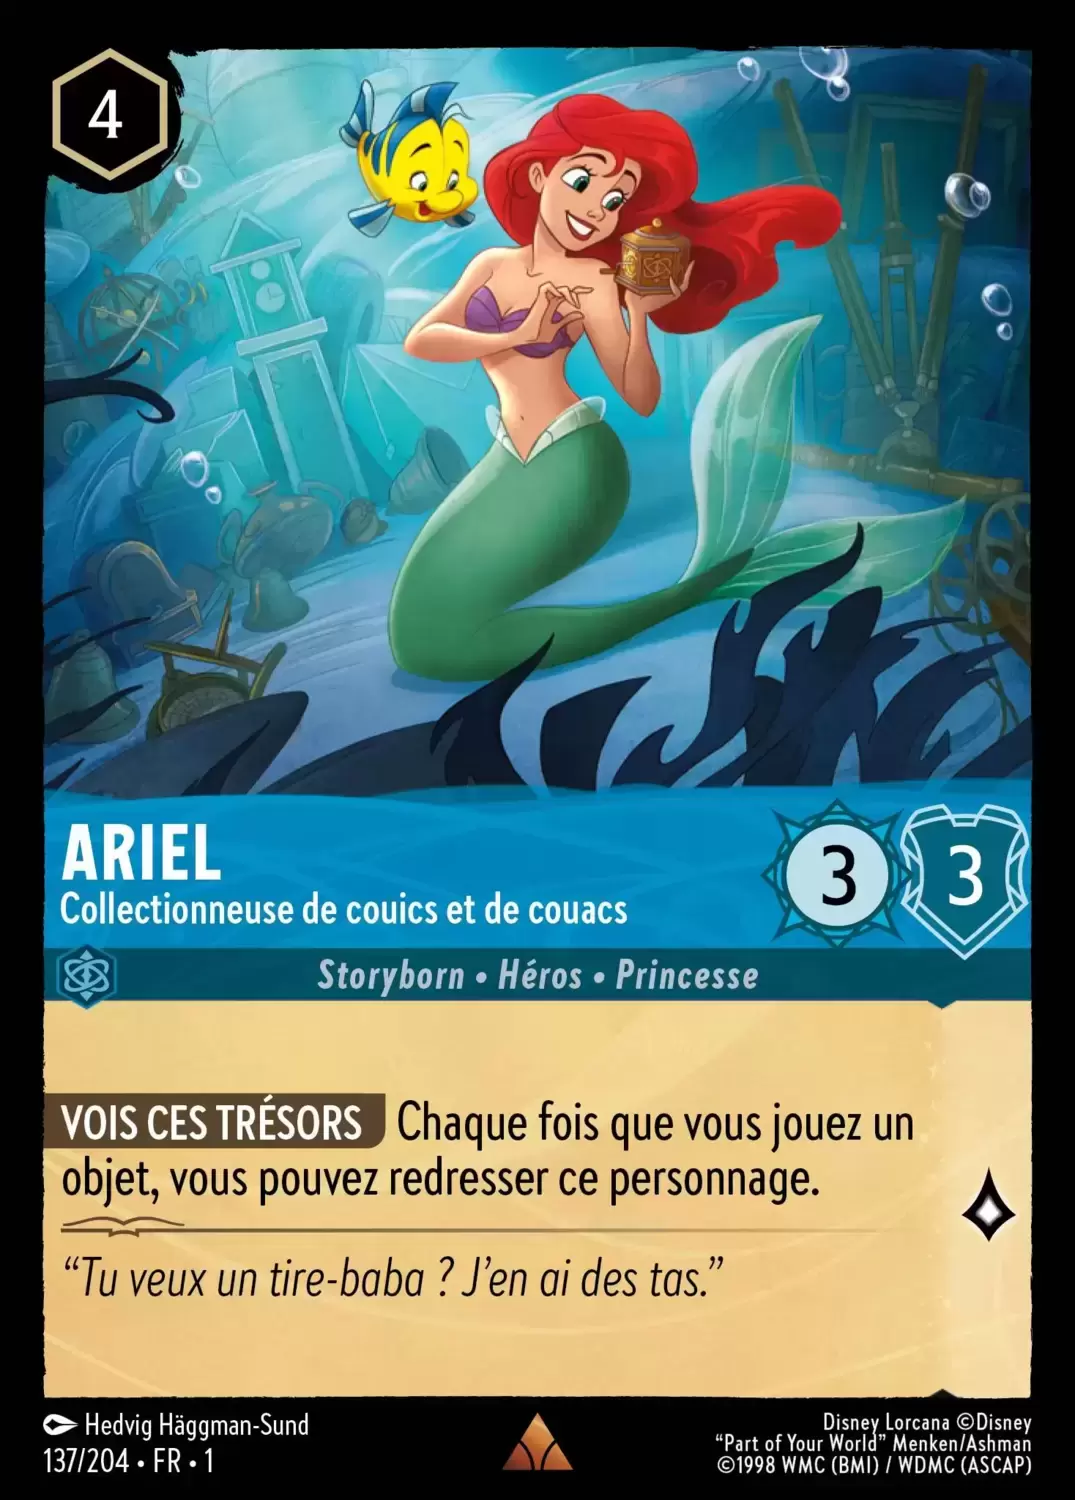 Premier chapitre - Ariel - Collectionneuse de couics et de couacs